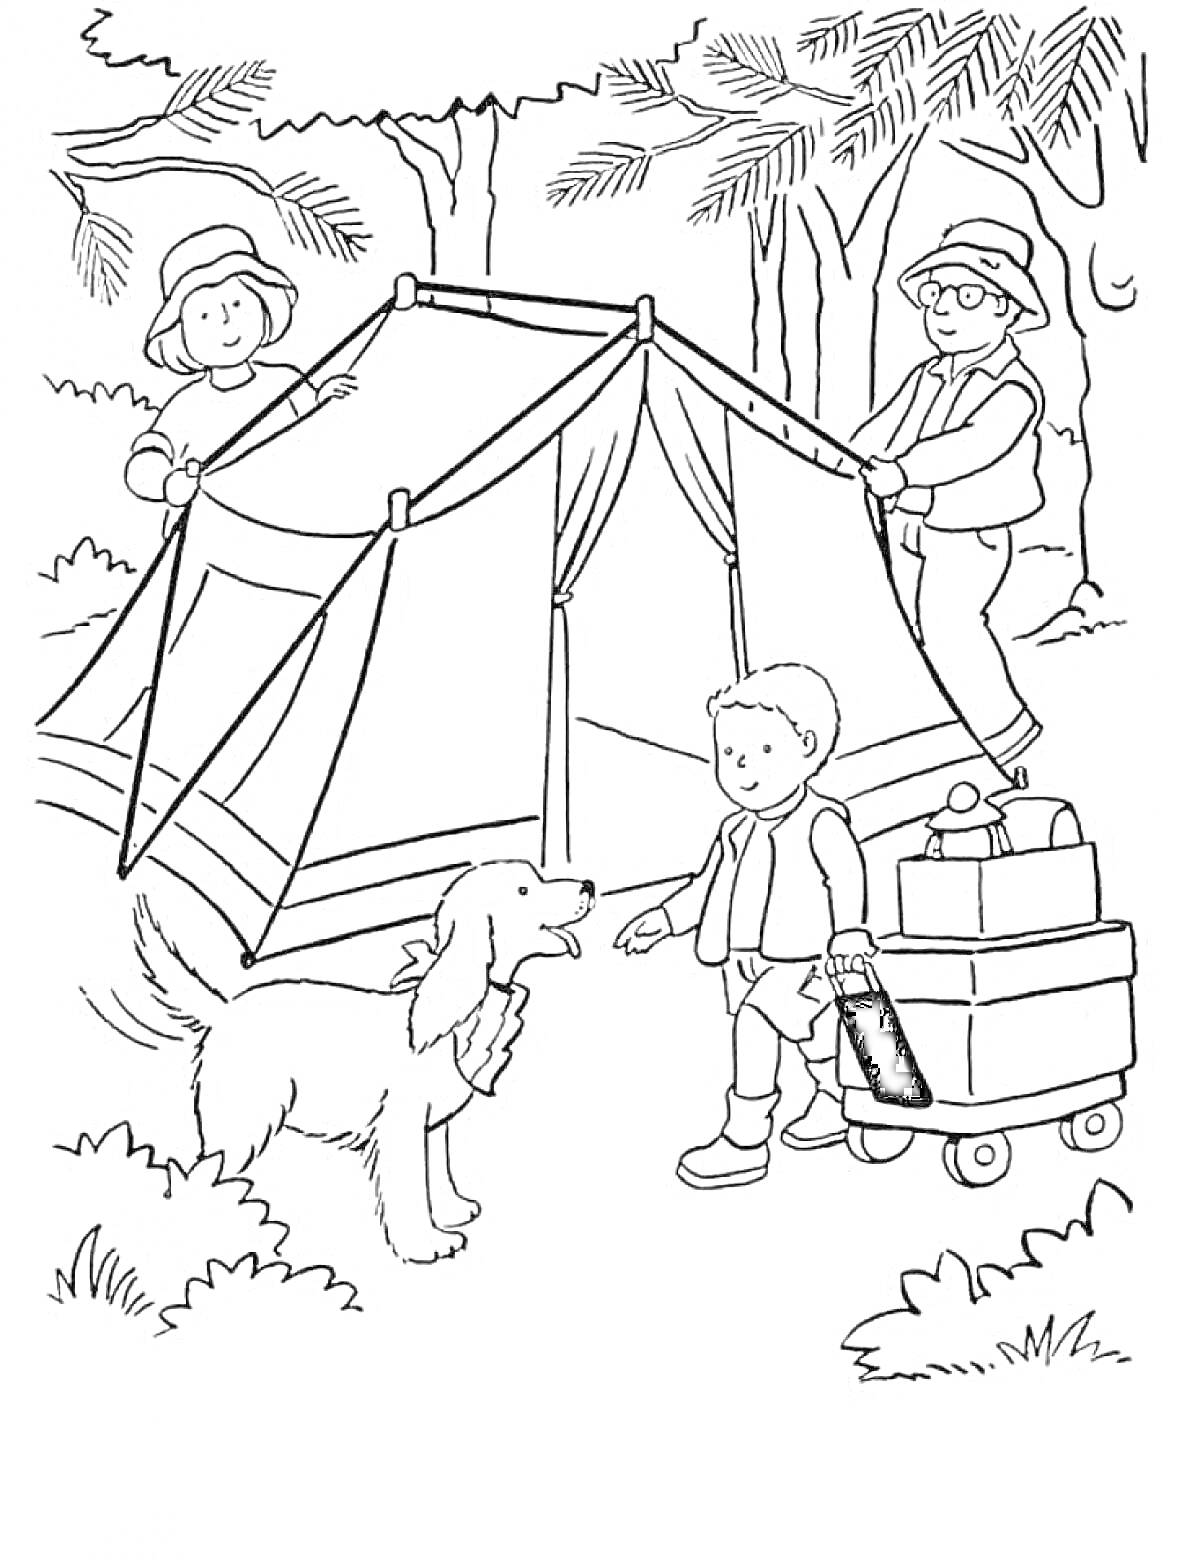 Раскраска Мужчина и женщина устанавливают палатку в лесу, рядом стоит мальчик с тележкой и собакой